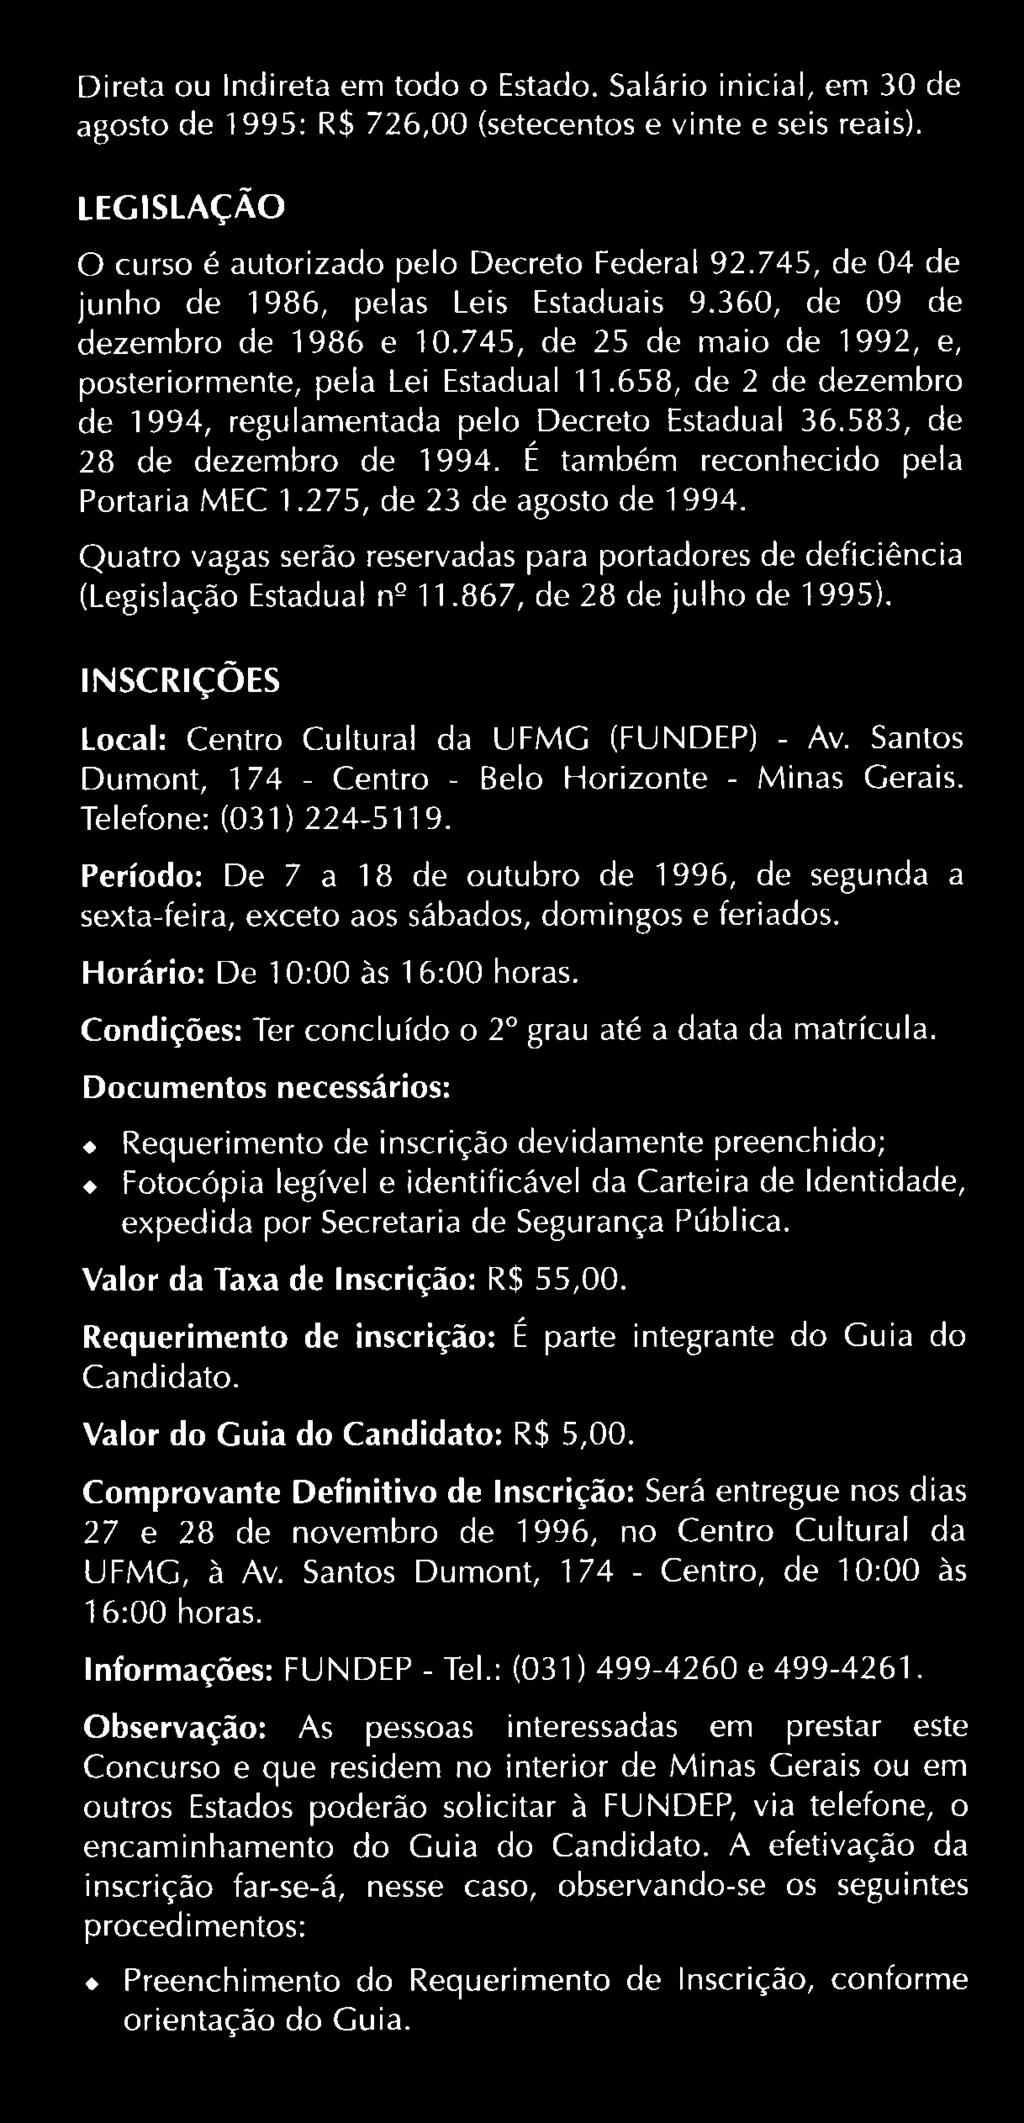 Santos Dumont, 174 - Centro - Belo Horizonte - Minas Gerais. Telefone: (031) 224-5119. Período: De 7 a 18 de outubro de 1996, de segunda a sexta-feira, exceto aos sábados, domingos e feriados.